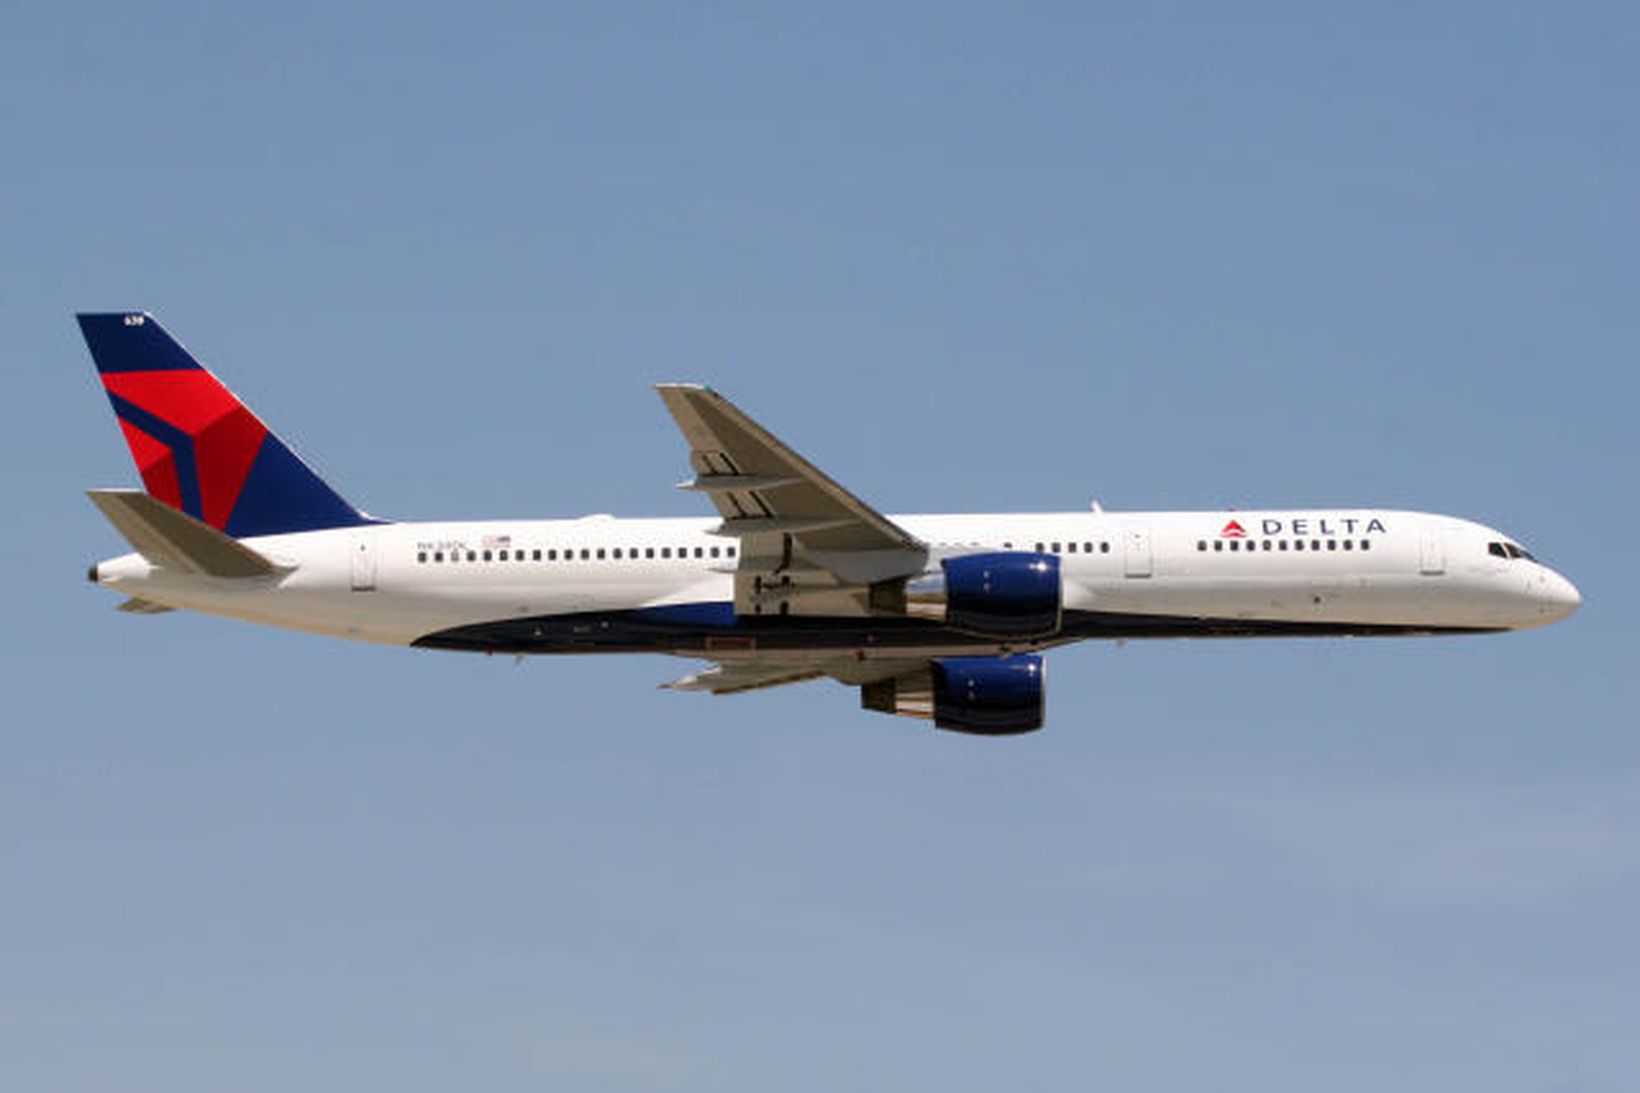 Farþegaþota Delta Air Lines af gerðinni Boeing 757.